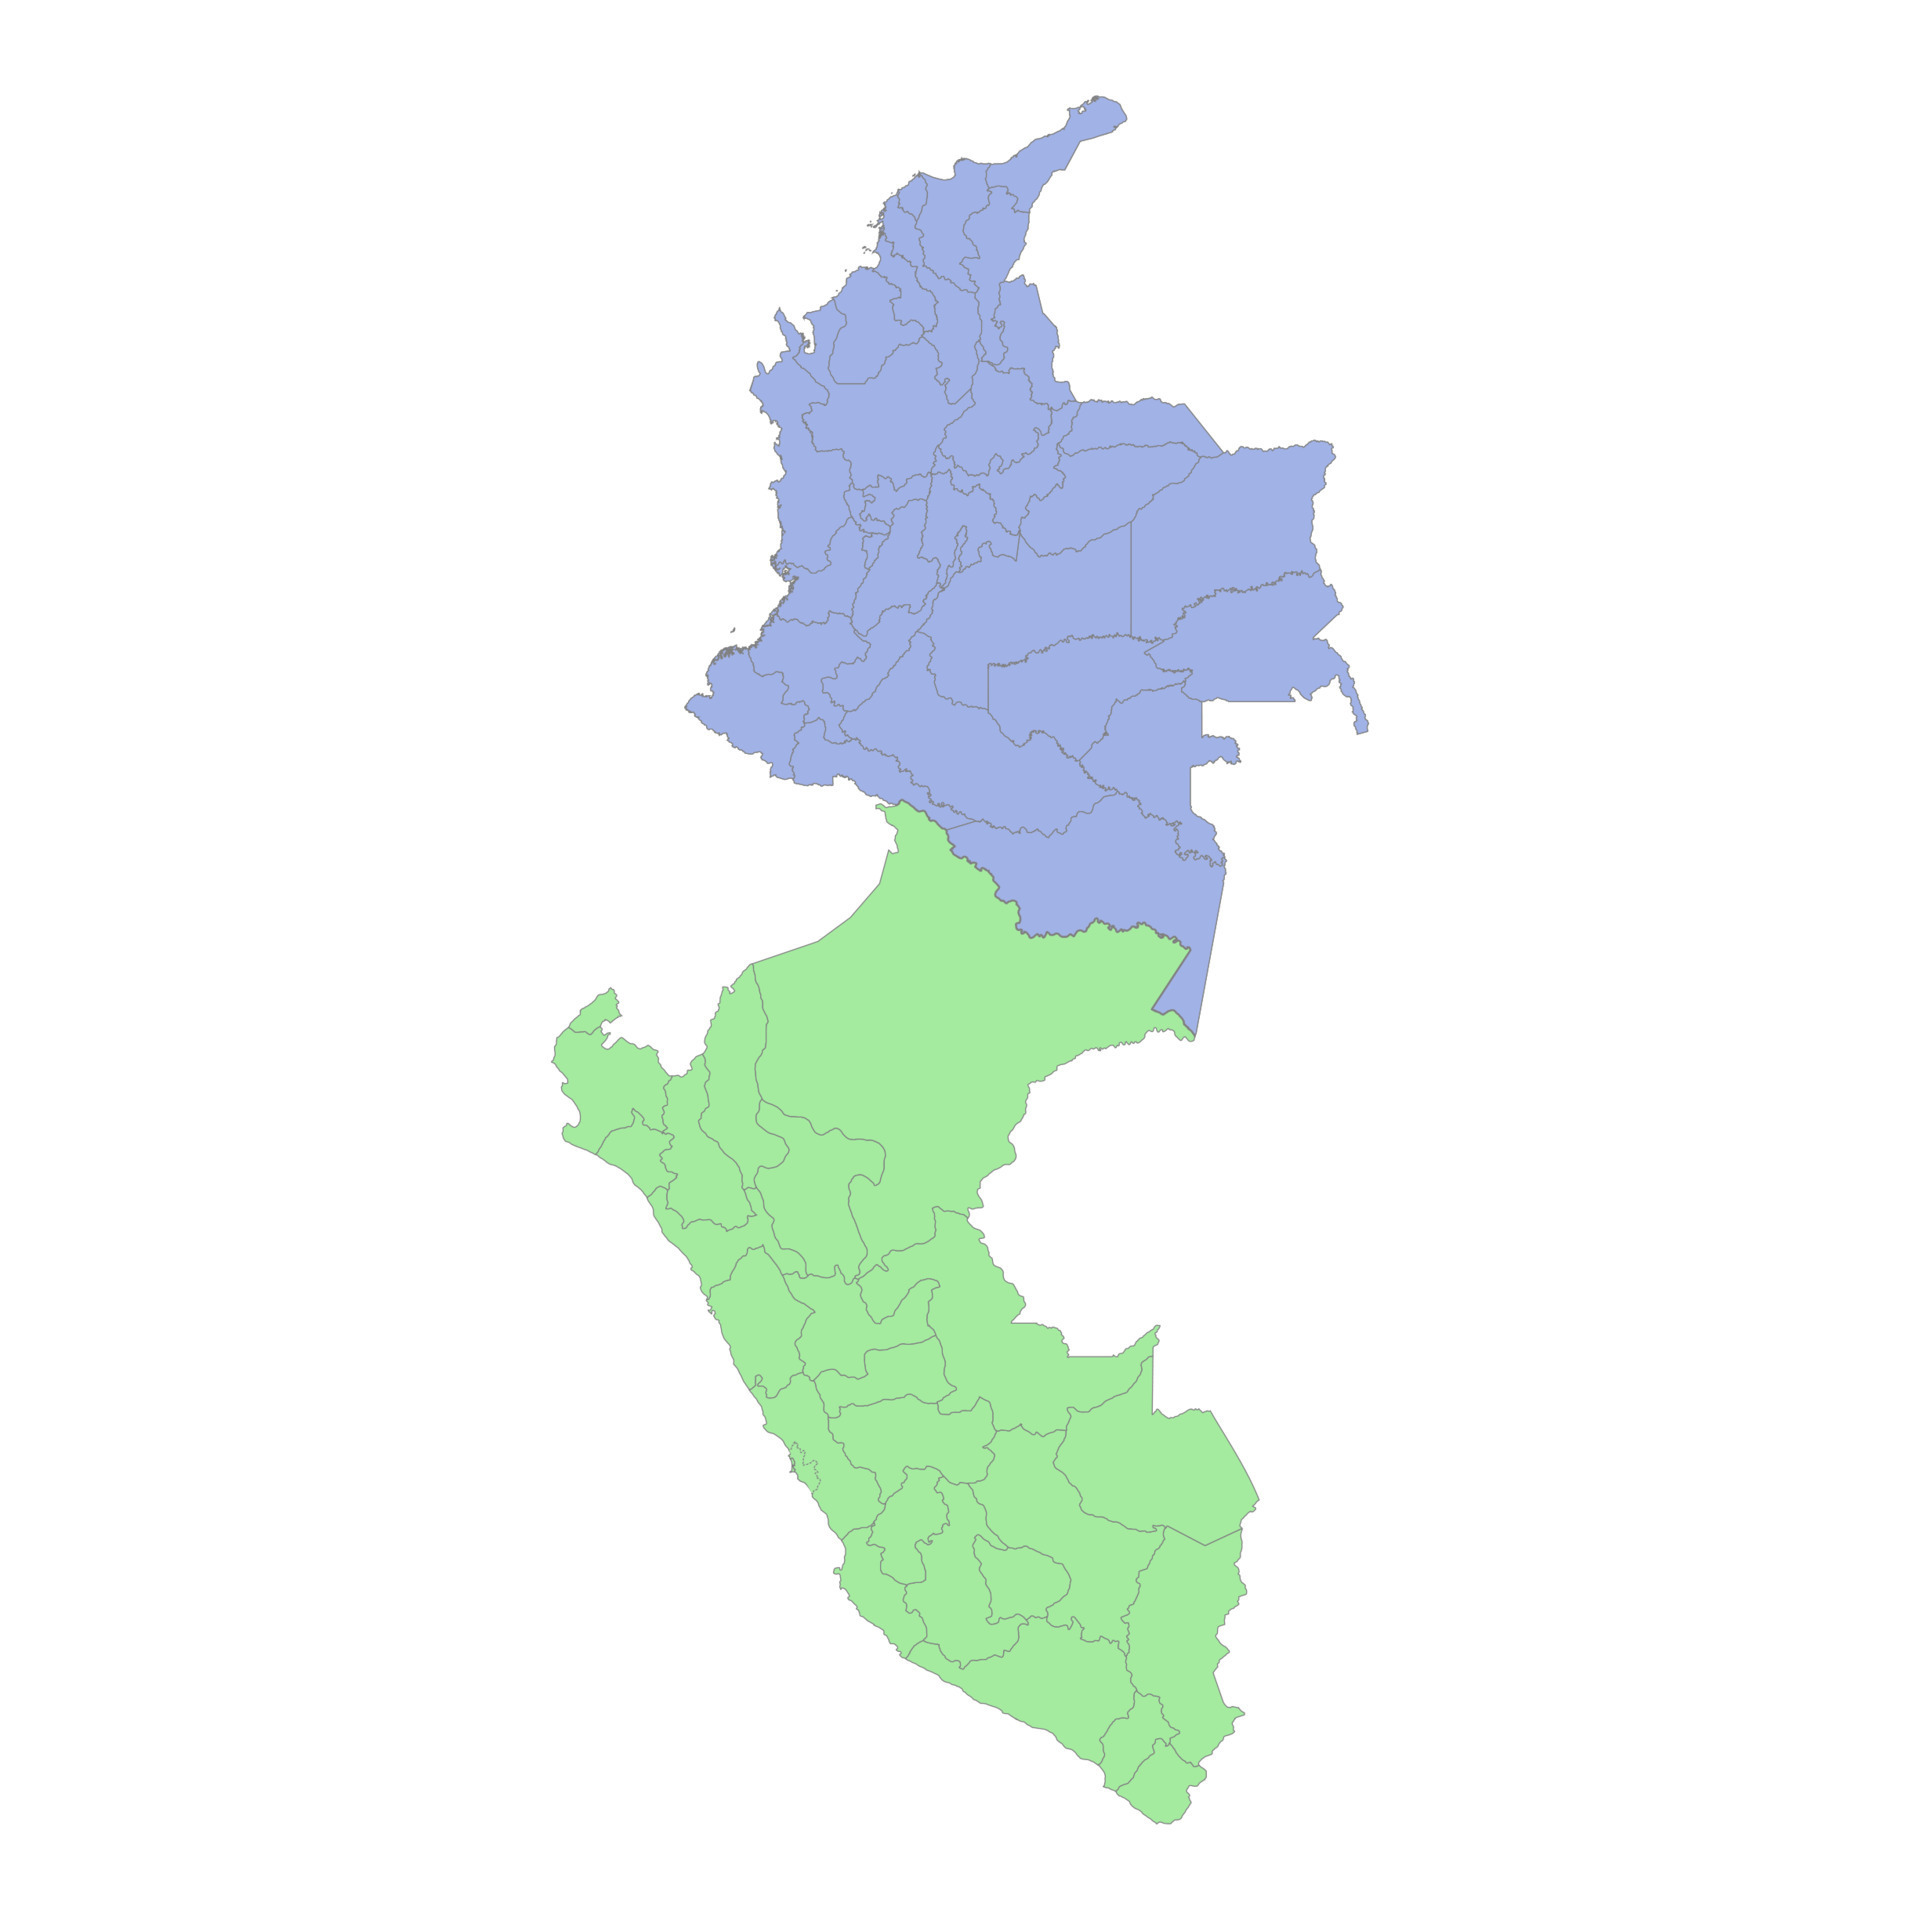 Mapa político de portugal com fronteiras com fronteiras de regiões